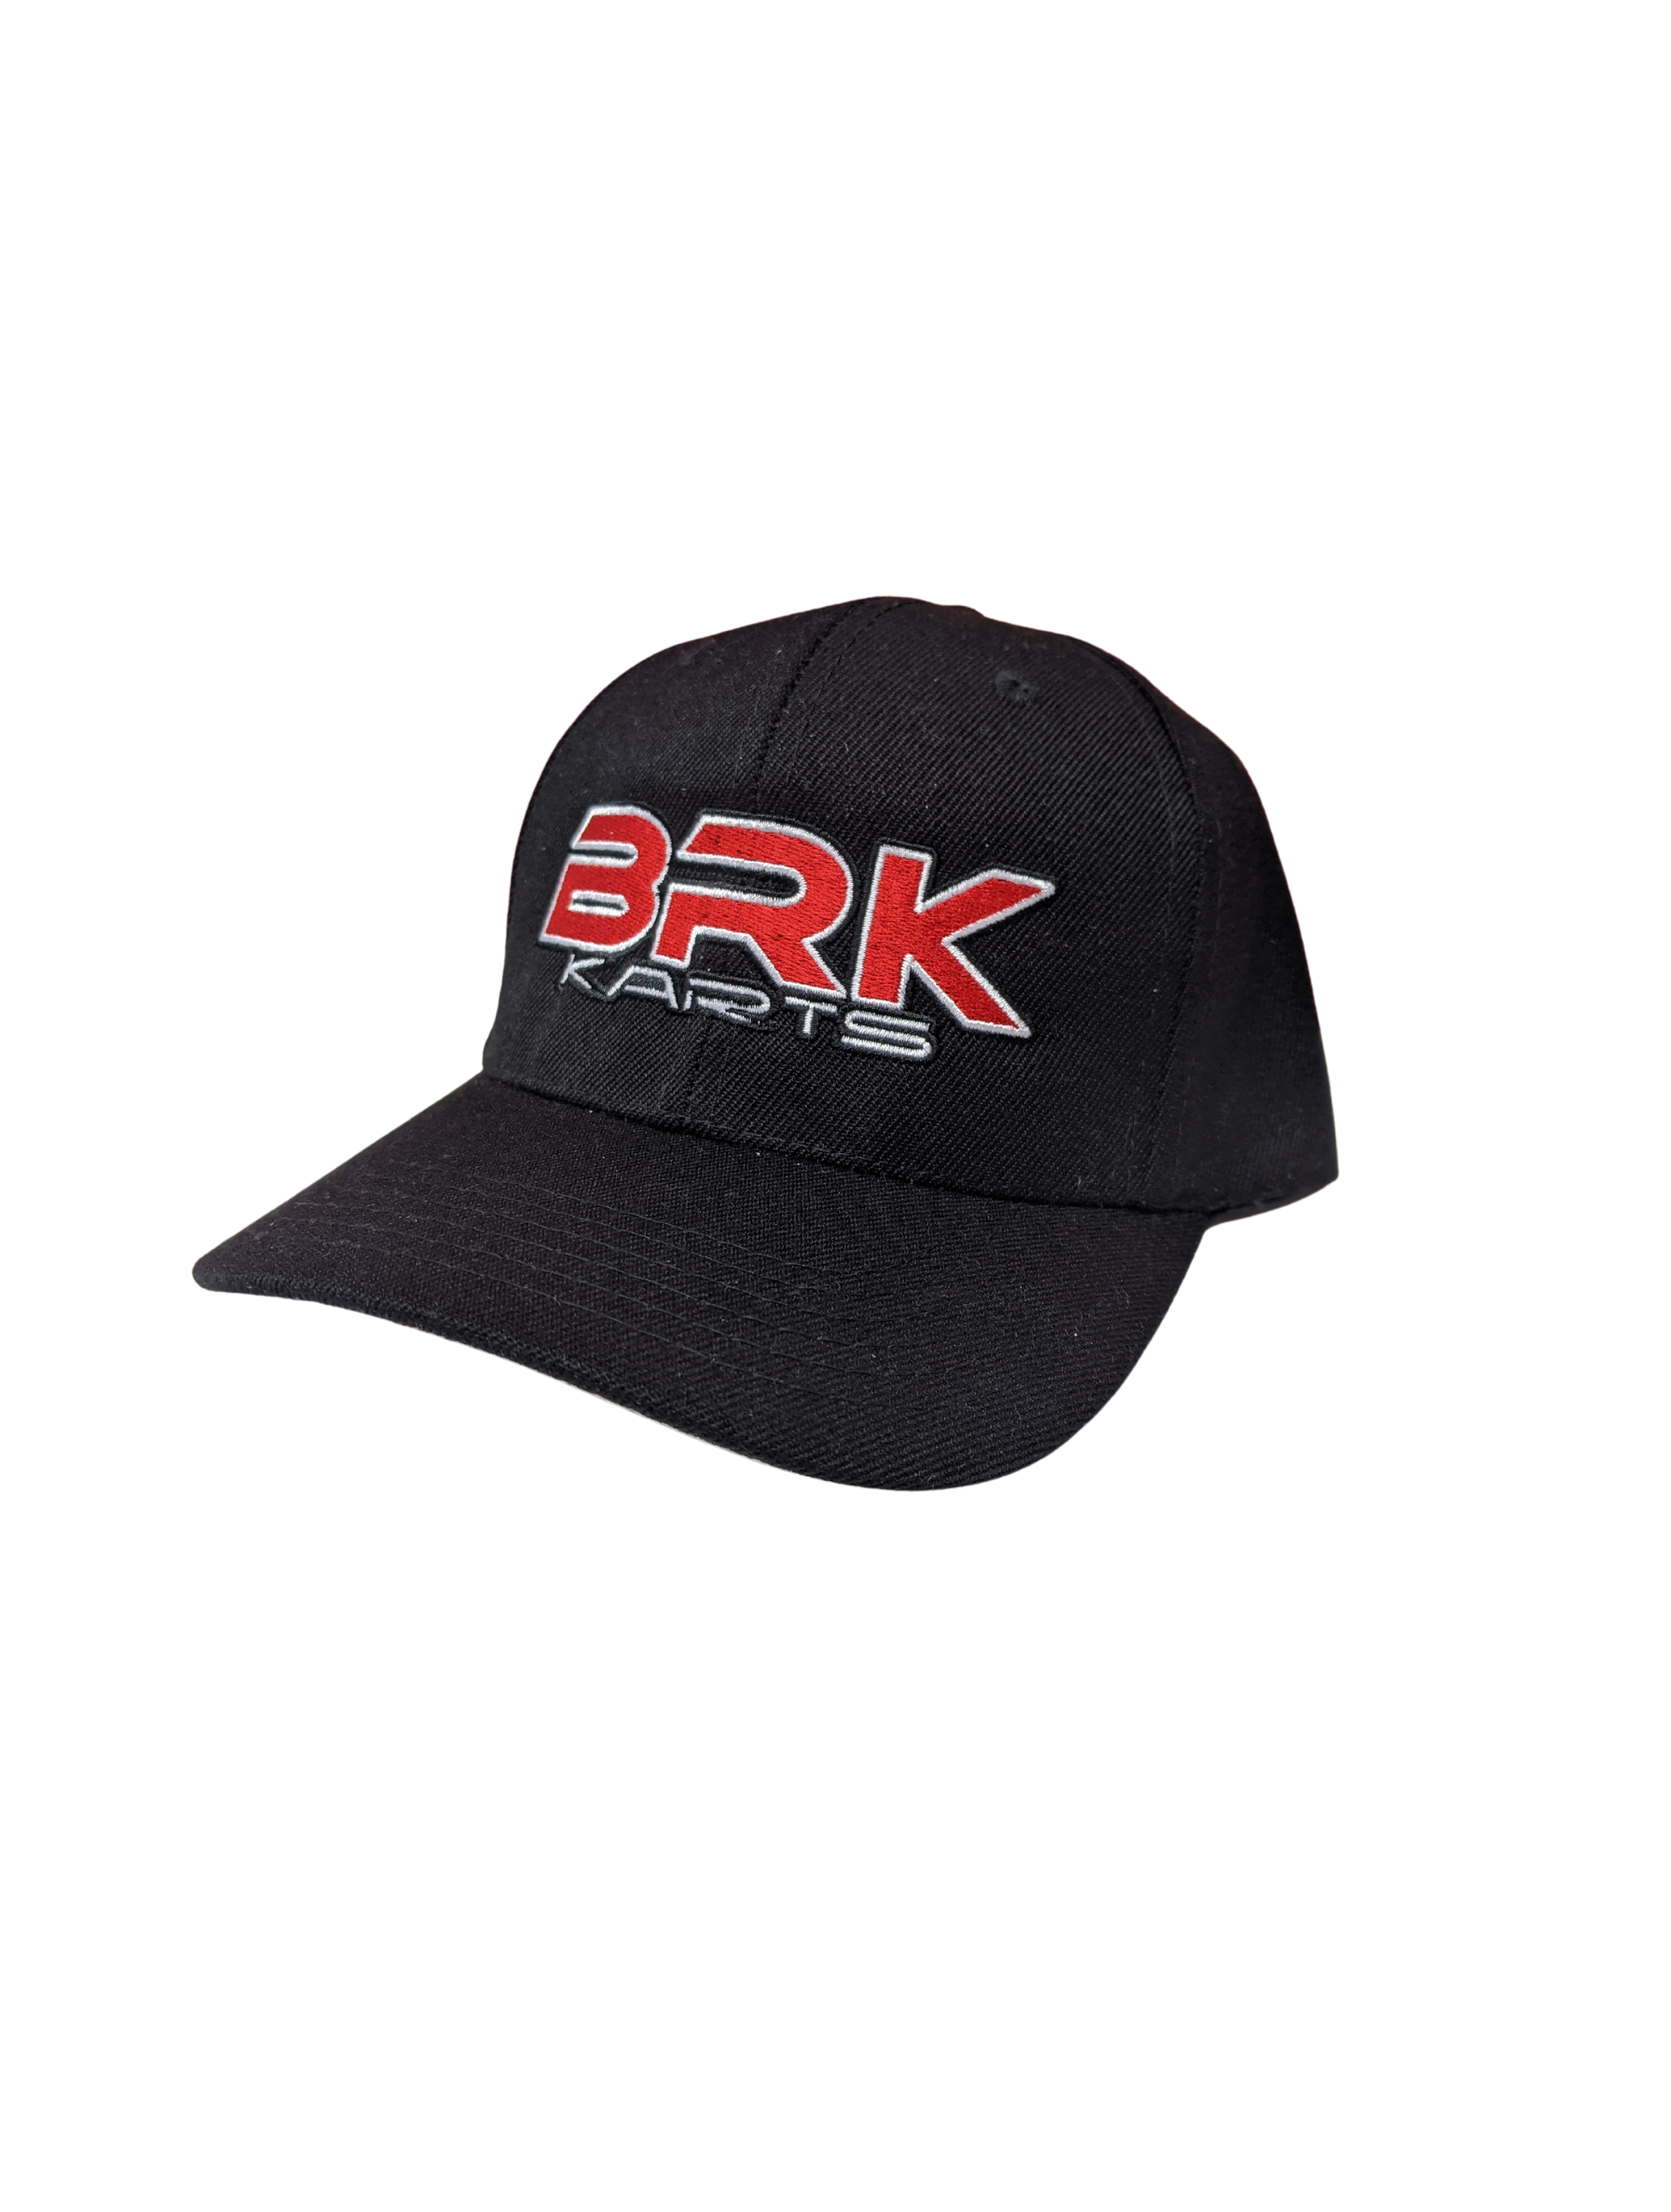 BRK Cap